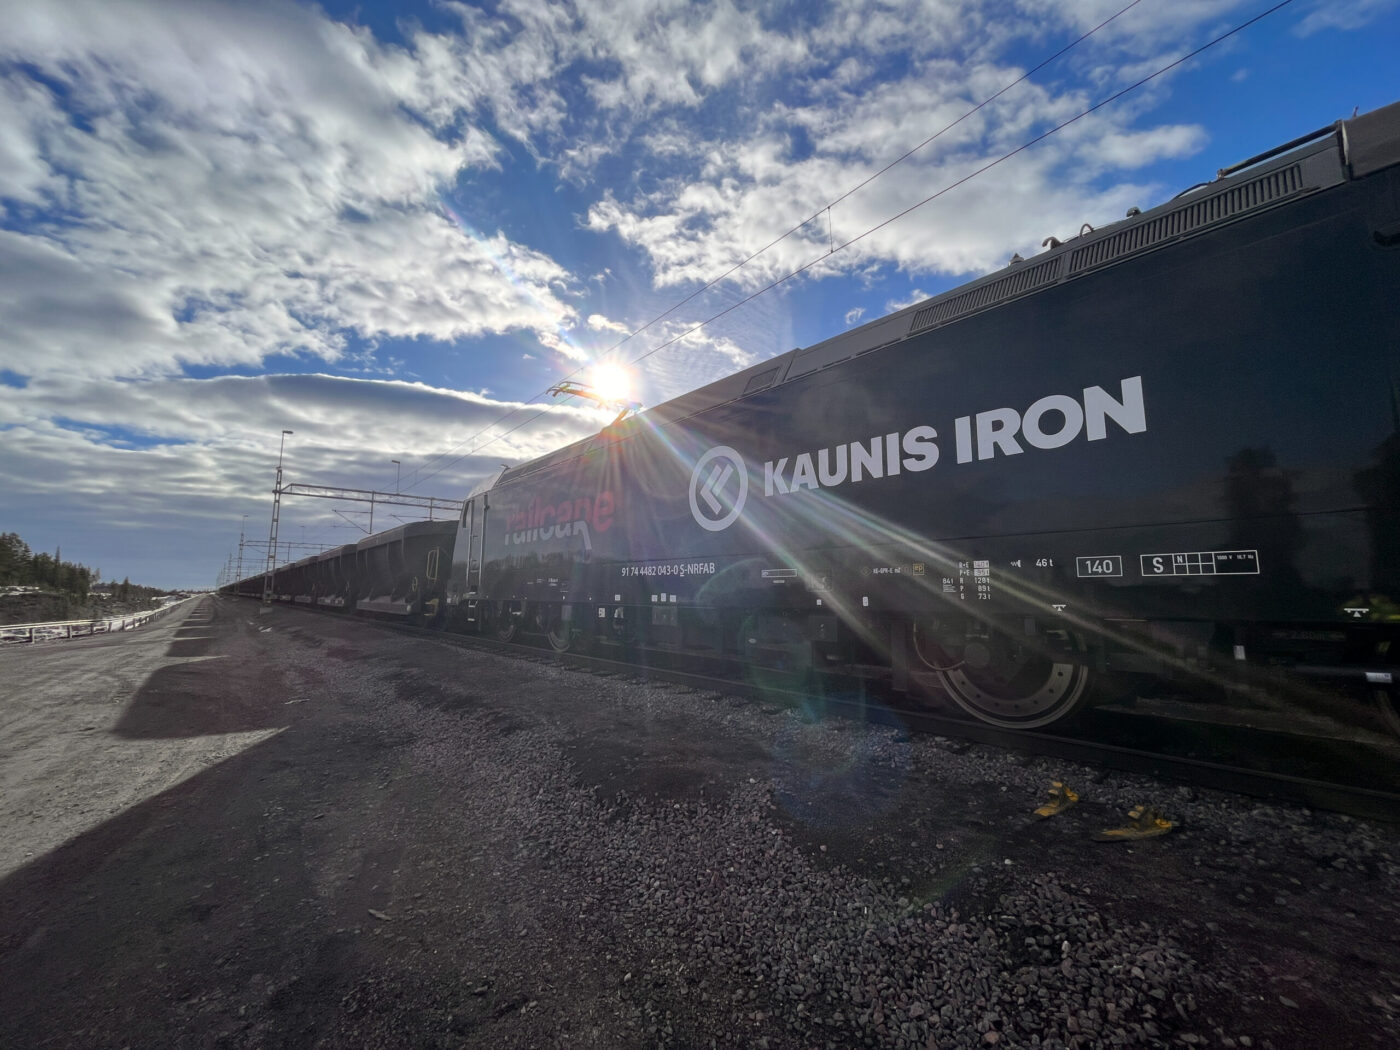 Tremendous train transports for Kaunis Iron